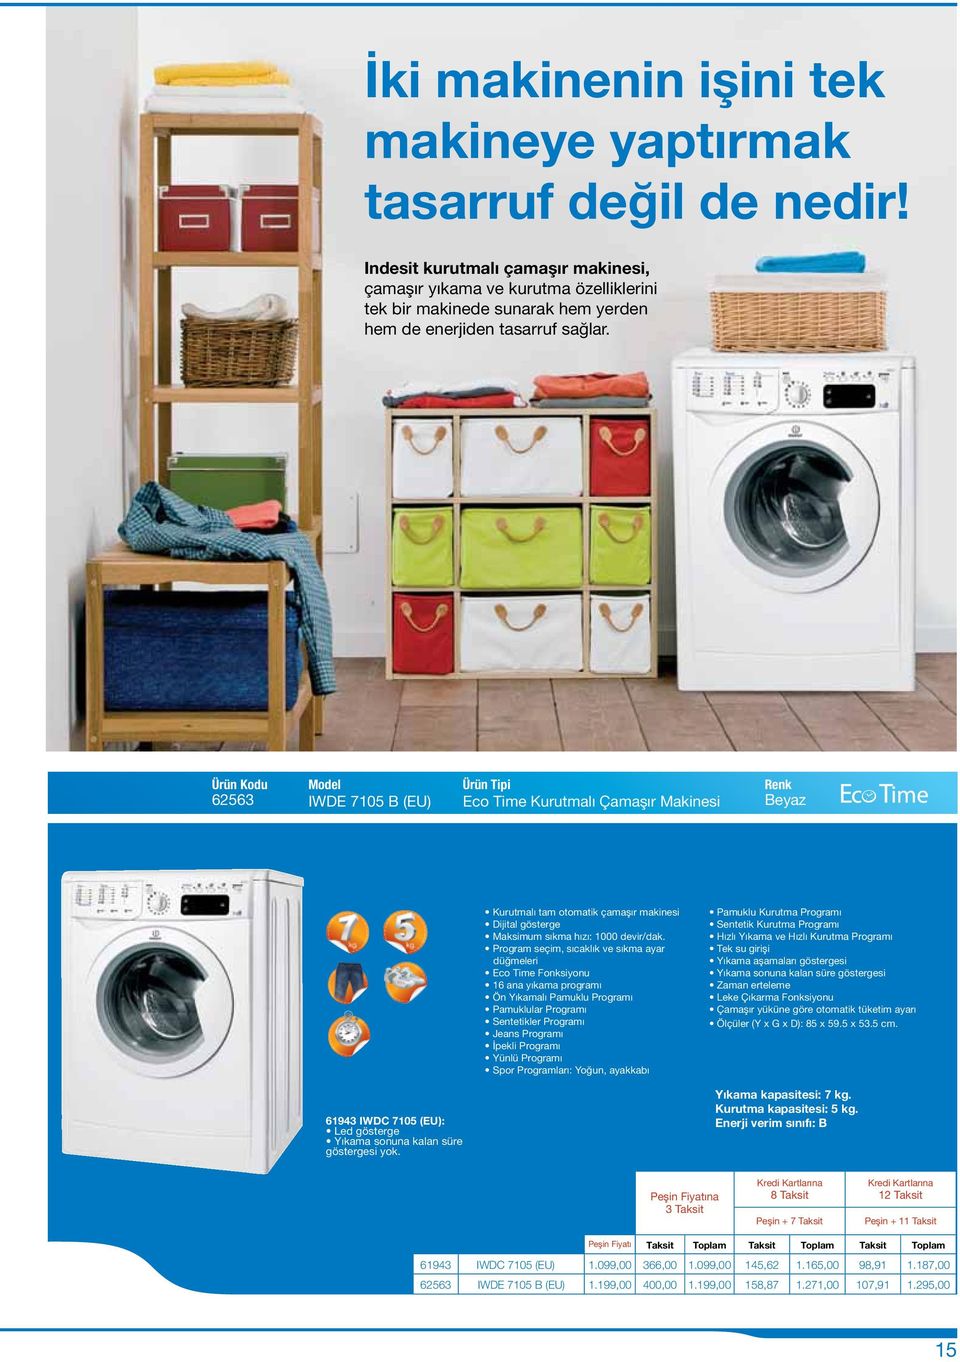 62563 IWDE 7105 B (EU) Eco Time Kurutmalı Çamaşır Makinesi Beyaz Kurutmalı tam otomatik çamaşır makinesi Dijital gösterge Maksimum sıkma hızı: 1000 devir/dak.